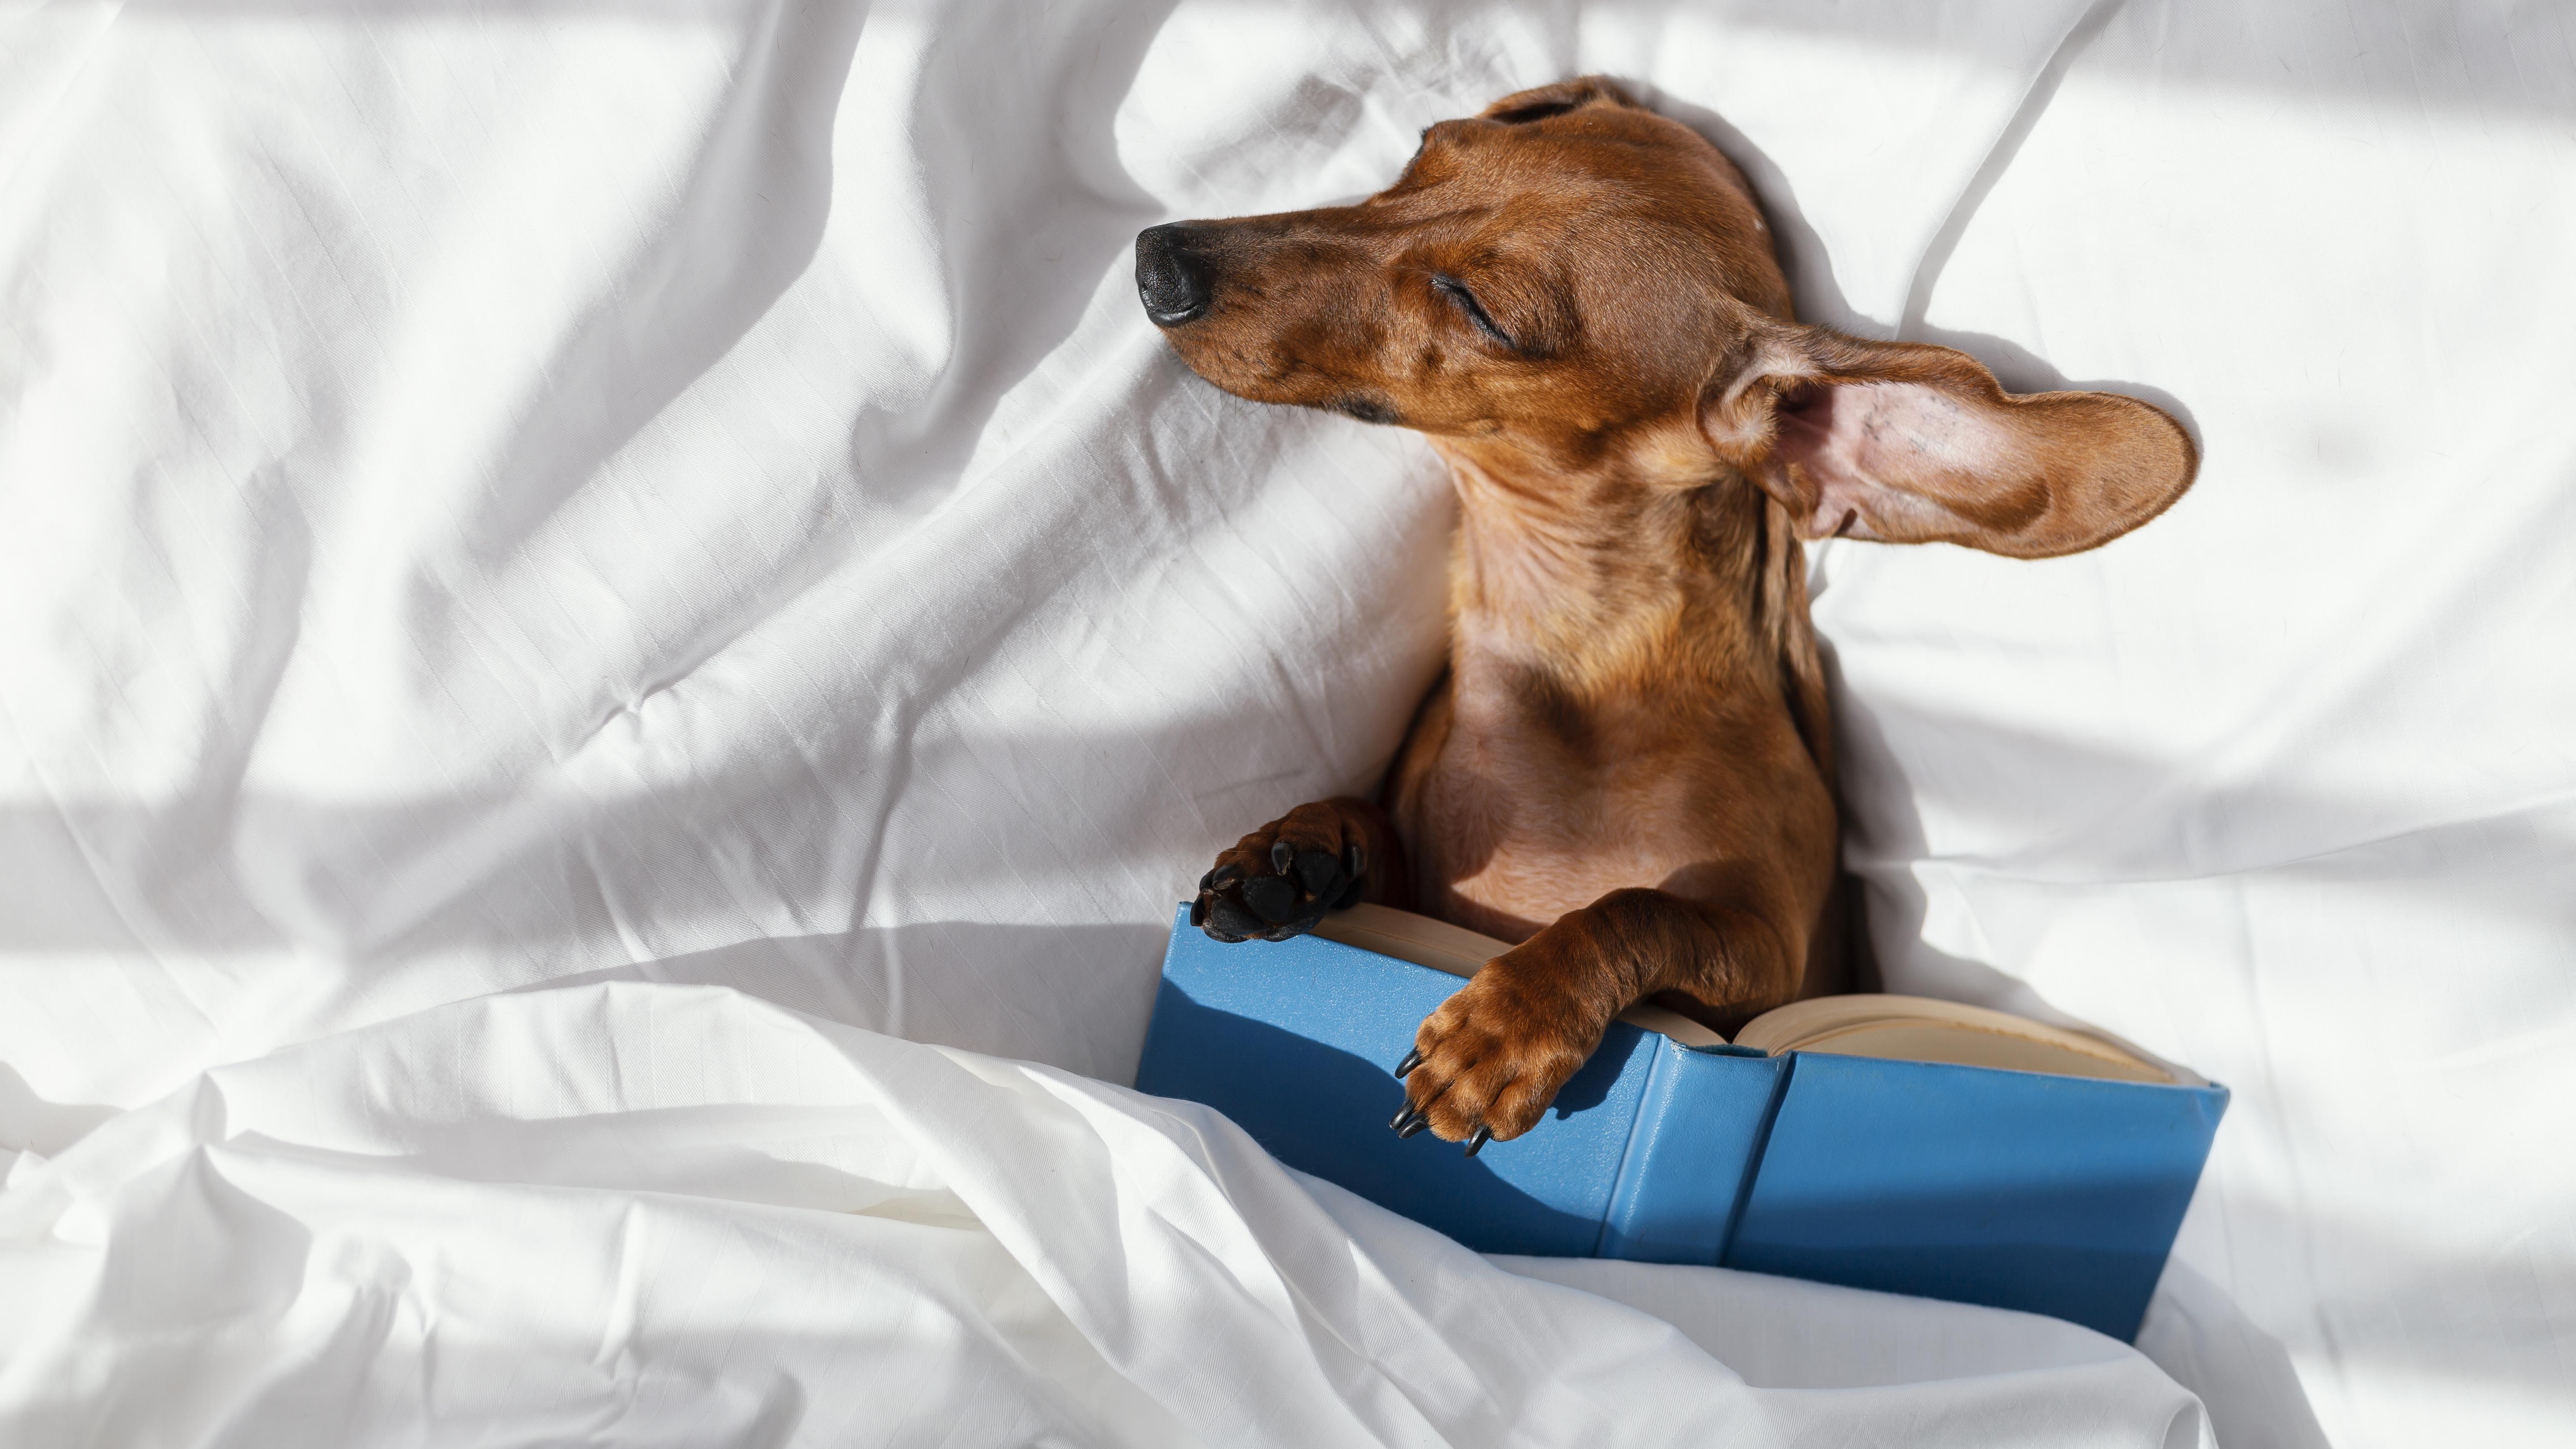 Sofà llit gran de luxe per a gossos: un refugi acollidor per al teu amic pelut